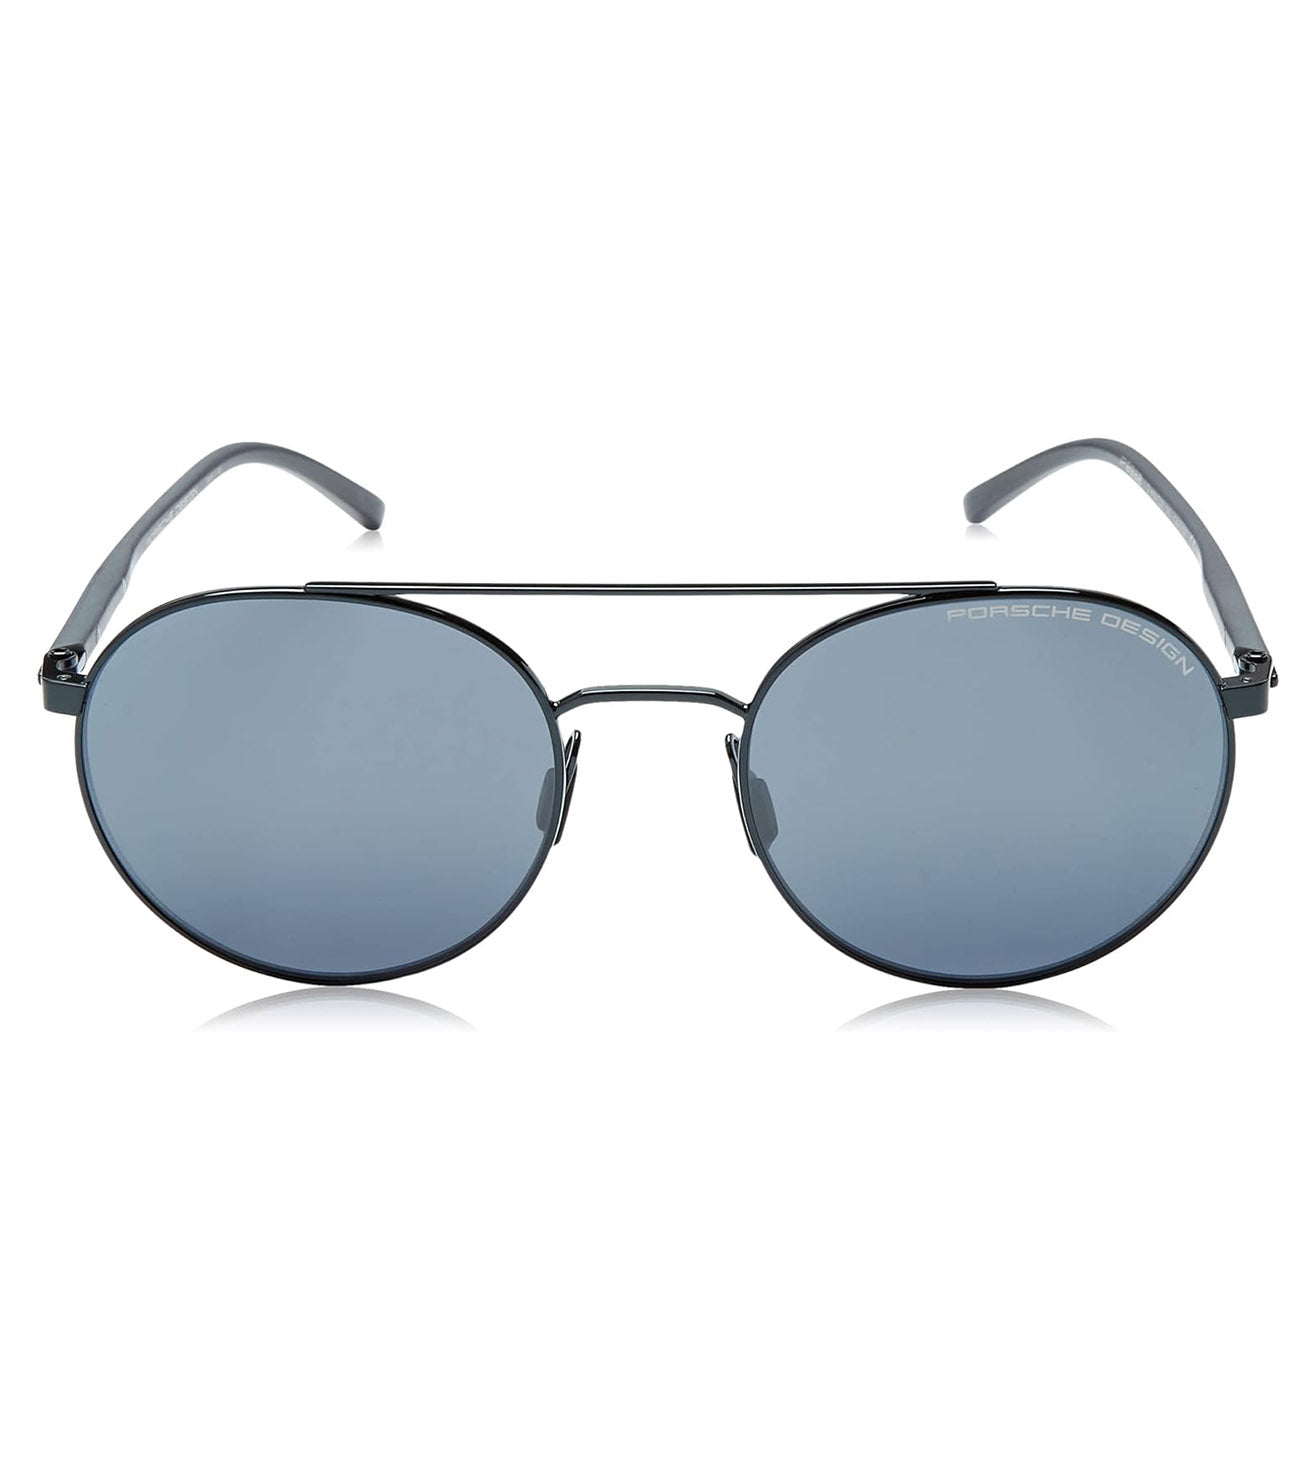 Porsche Design Unisex Blue-Mirrored Round Sunglasses